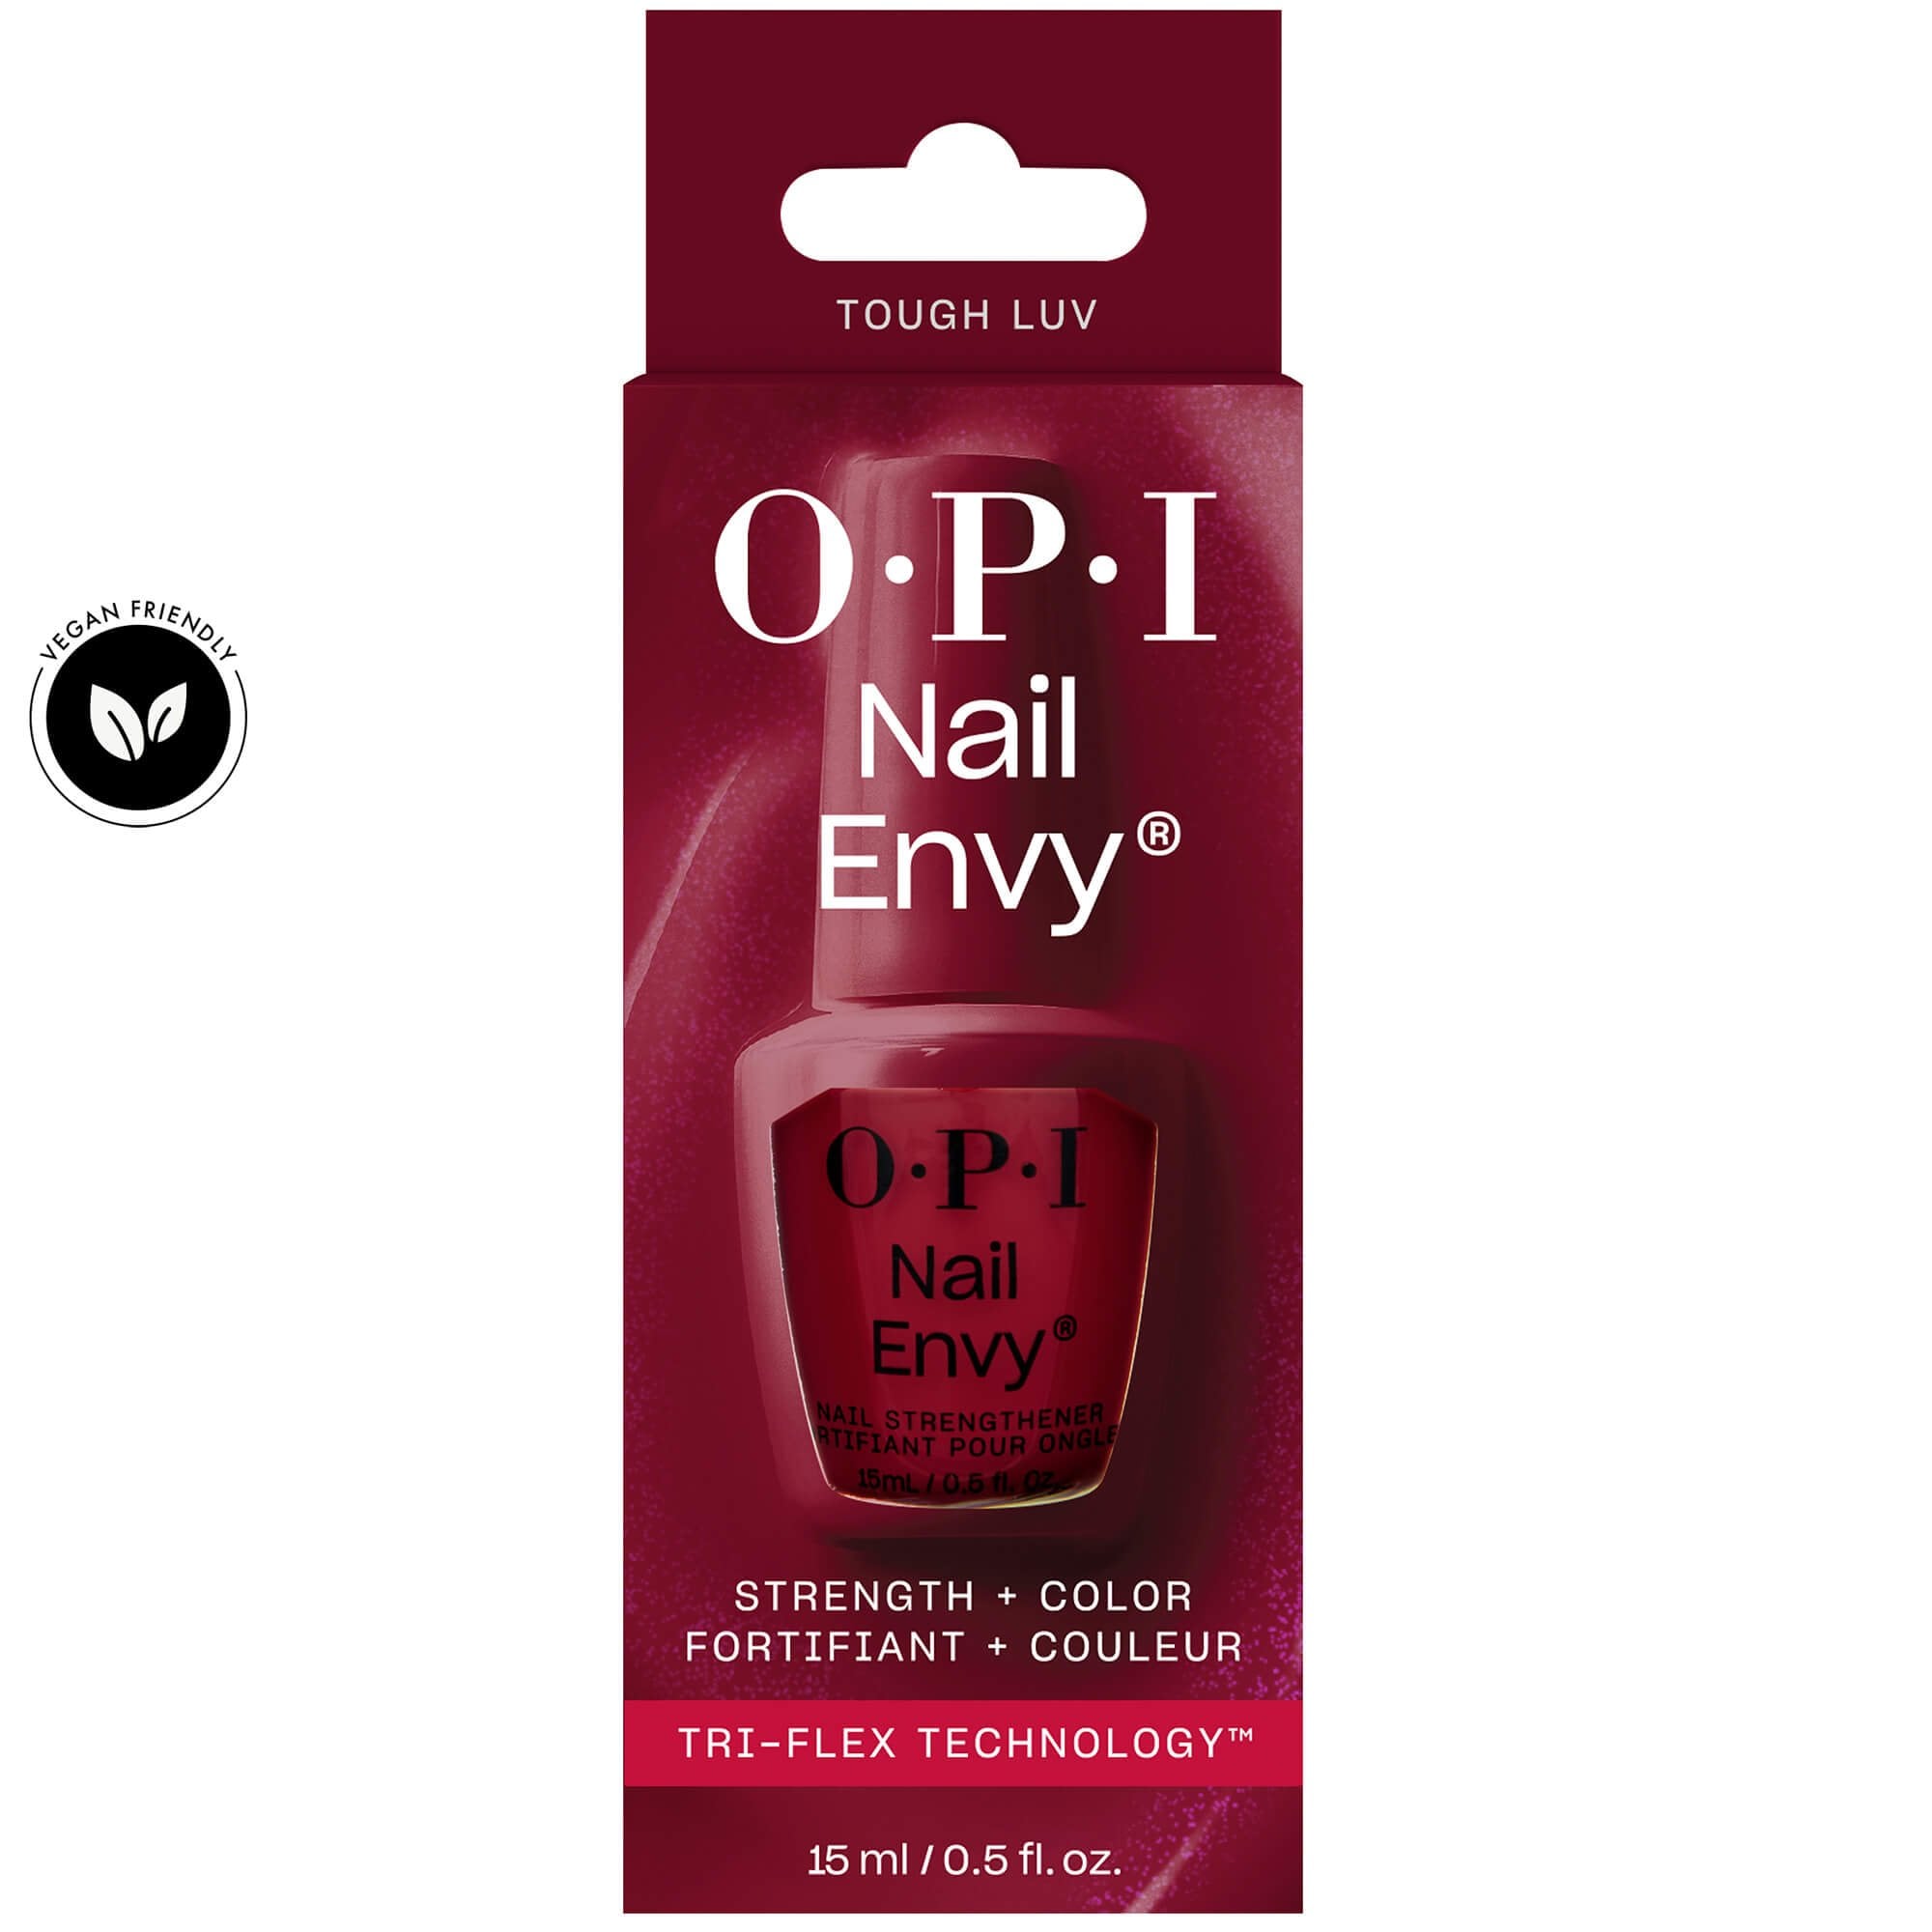 OPI Nail Envy Nail Treatment – Tri-Flex Technology Tough Luv (NT226)